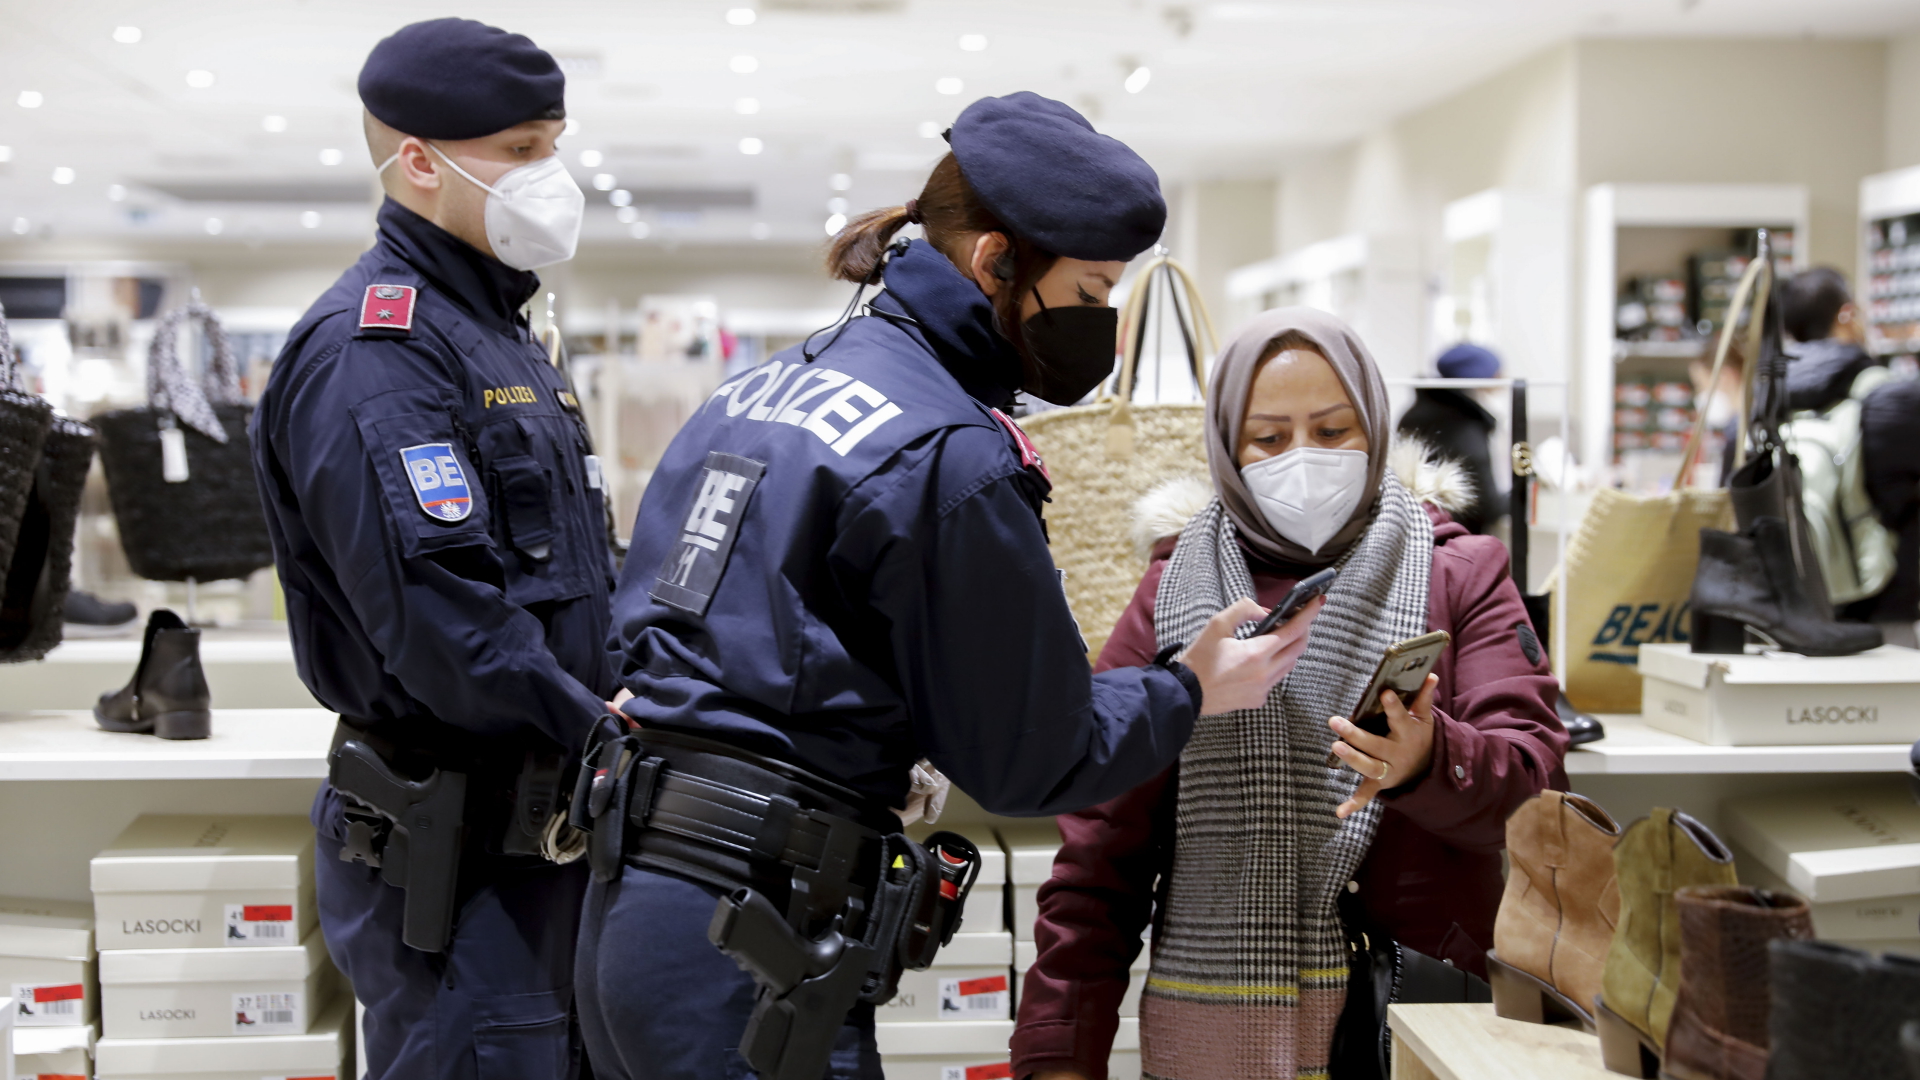 Eine Polizistin in Wien kontrolliert den Impfstatus auf dem Handy einer Frau.